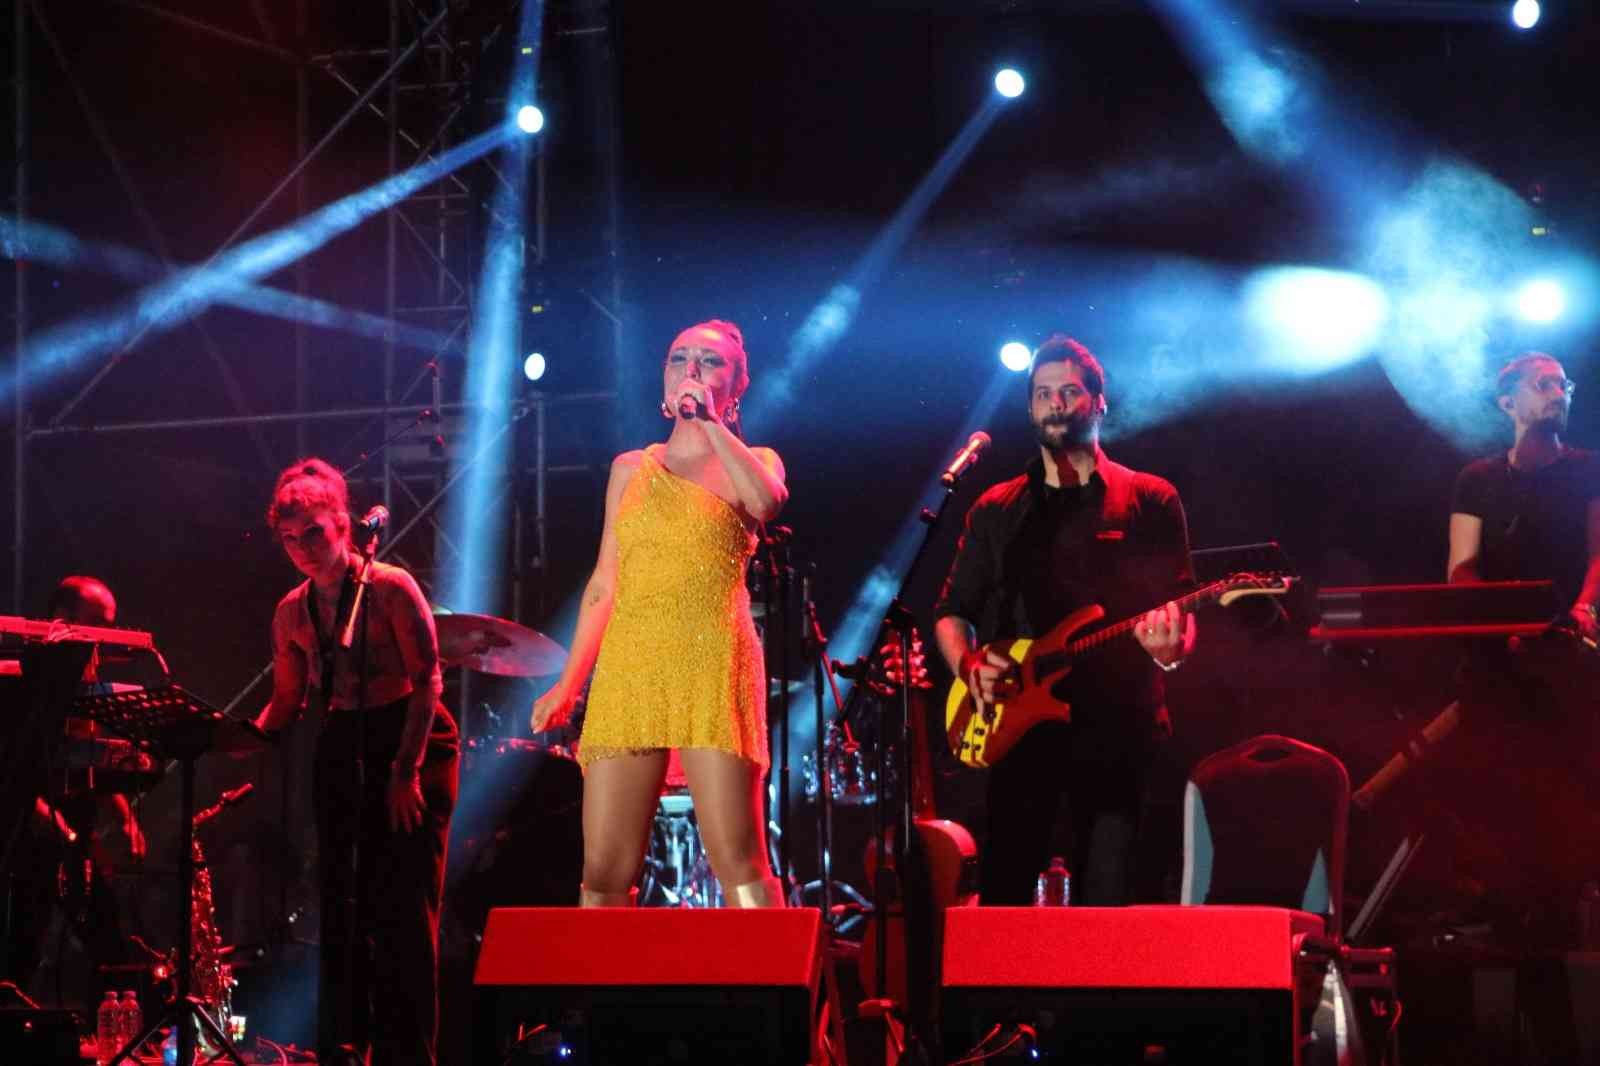 Tekirdağ’ın Süleymanpaşa ilçesinde 56’ncı Uluslararası Kiraz Festivalinde konser veren Ziynet Sali sevenlerine unutulmaz bir gece yaşattı ...